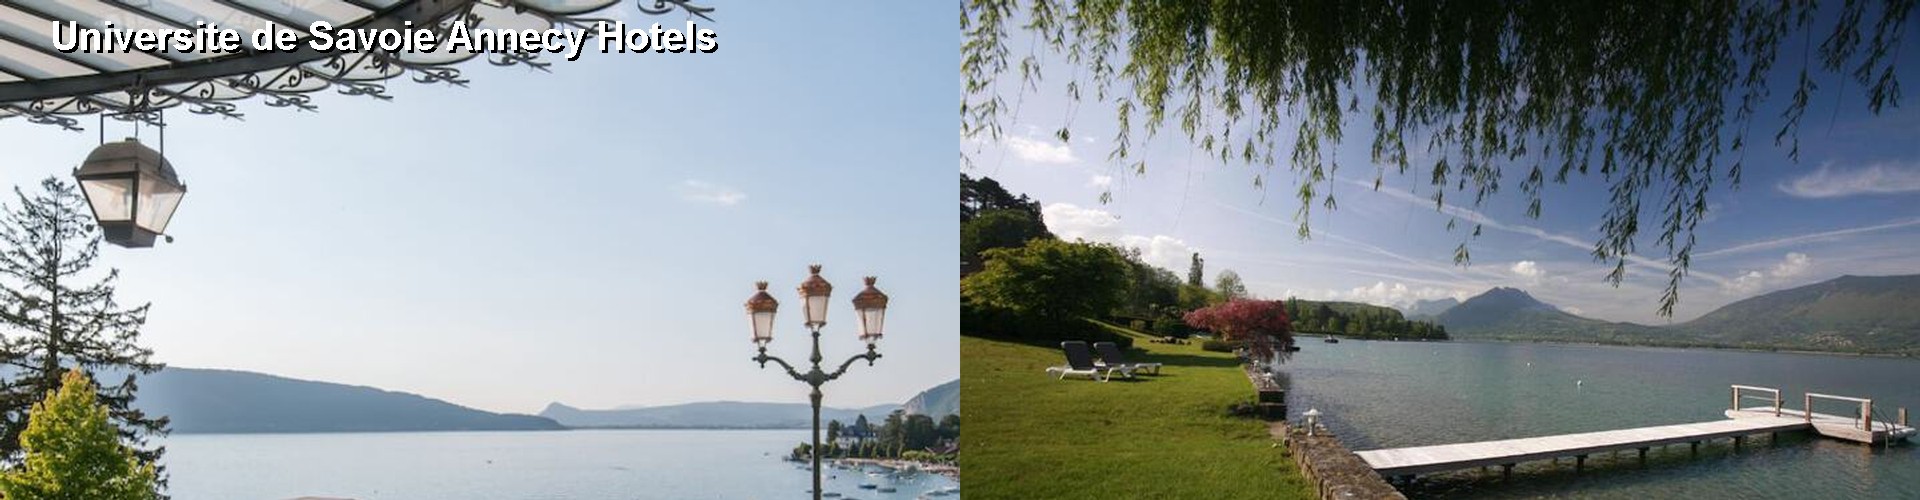 5 Best Hotels near Universite de Savoie Annecy